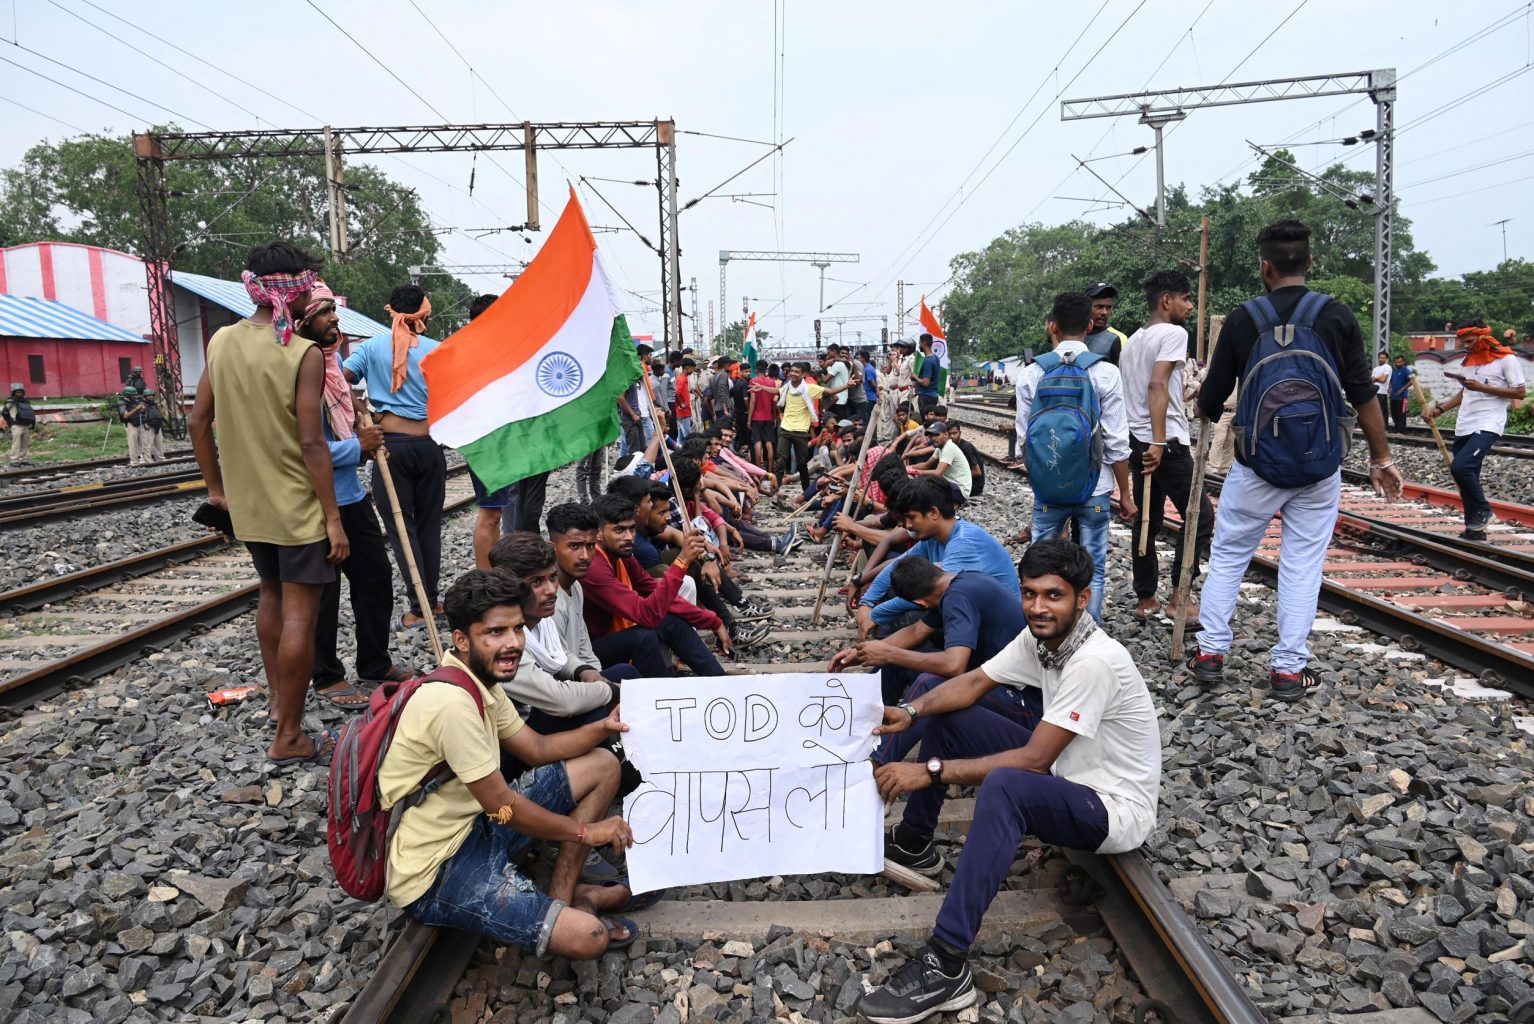 جمعہ کو دھنباد میں ریلوے ٹریک پر اگنی پتھ اسکیم  کے خلاف احتجاج میں بیٹھے نوجوان۔ (تصویر: پی ٹی آئی)